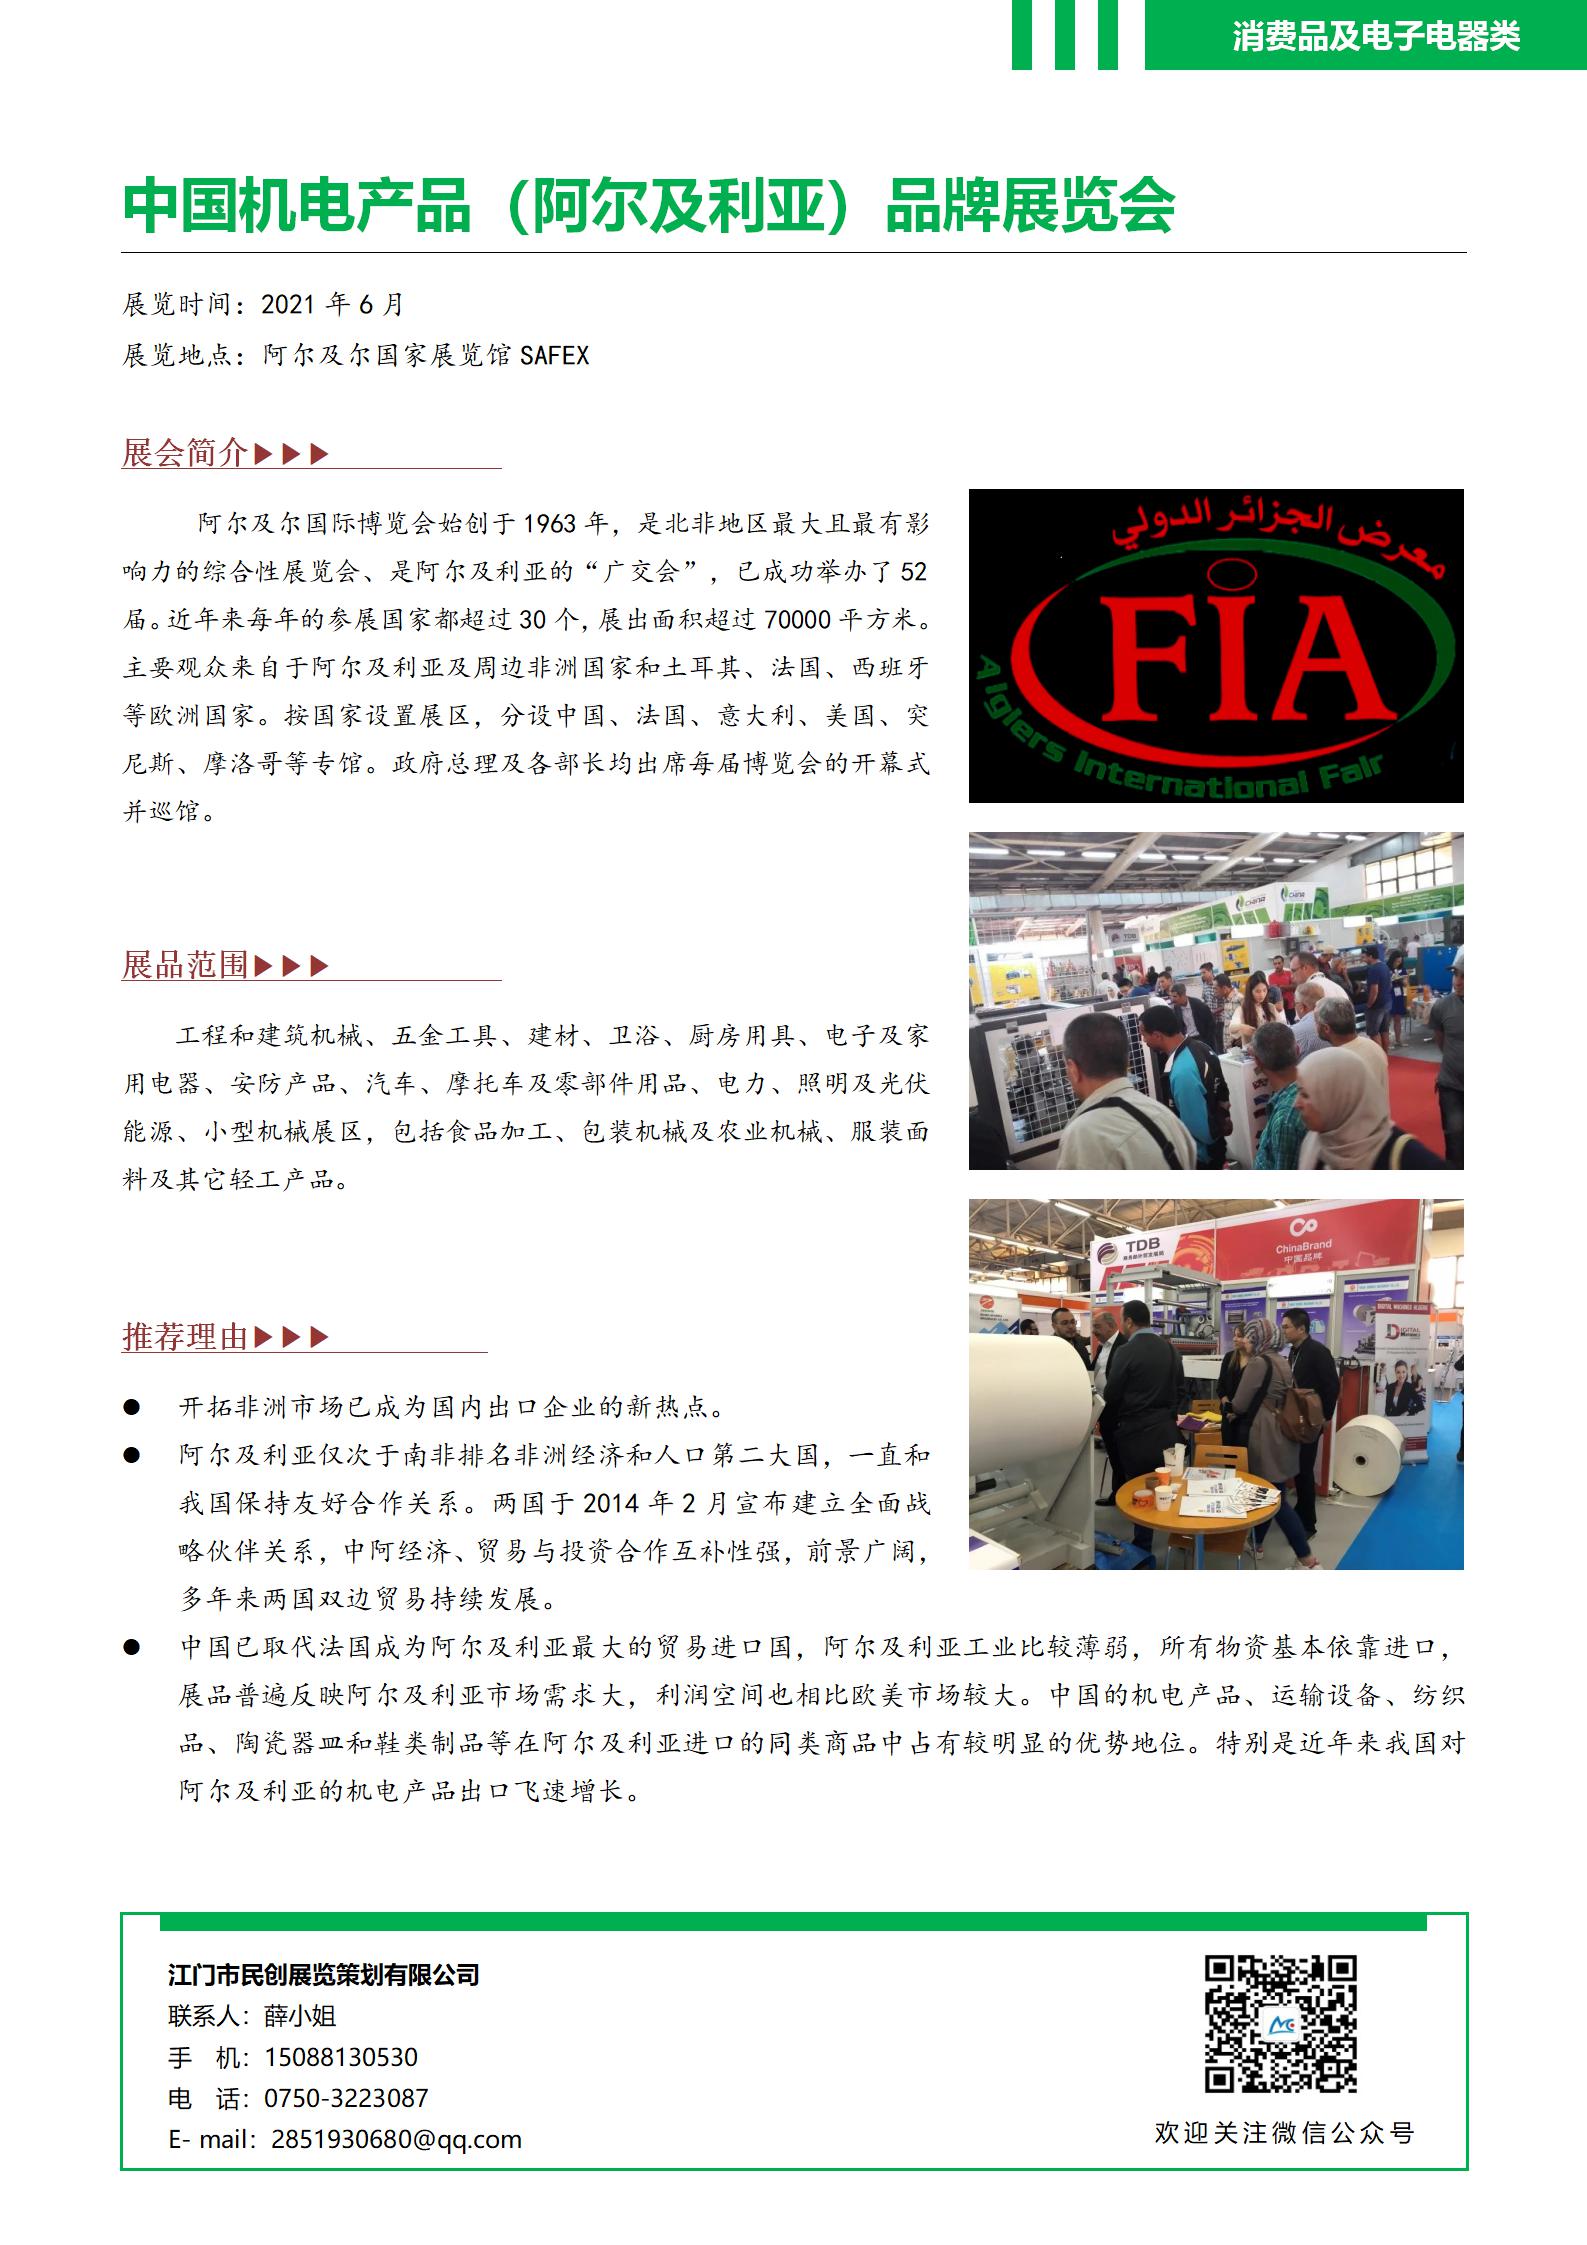 中国机电产品（阿尔及利亚）品牌展览会